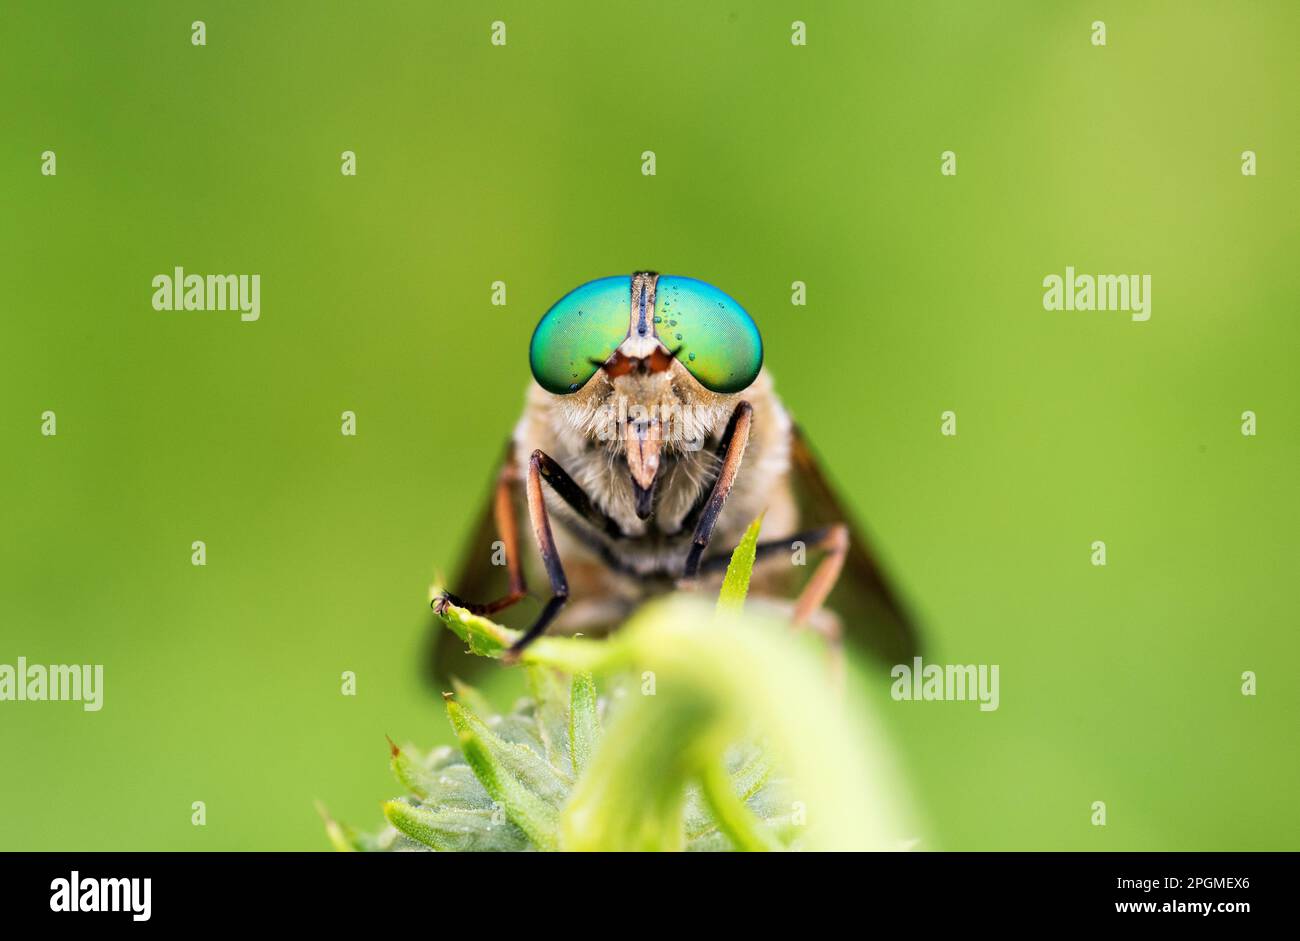 un bel esemplare di tafano con grandi occhi verdi su un fiore Stockfoto